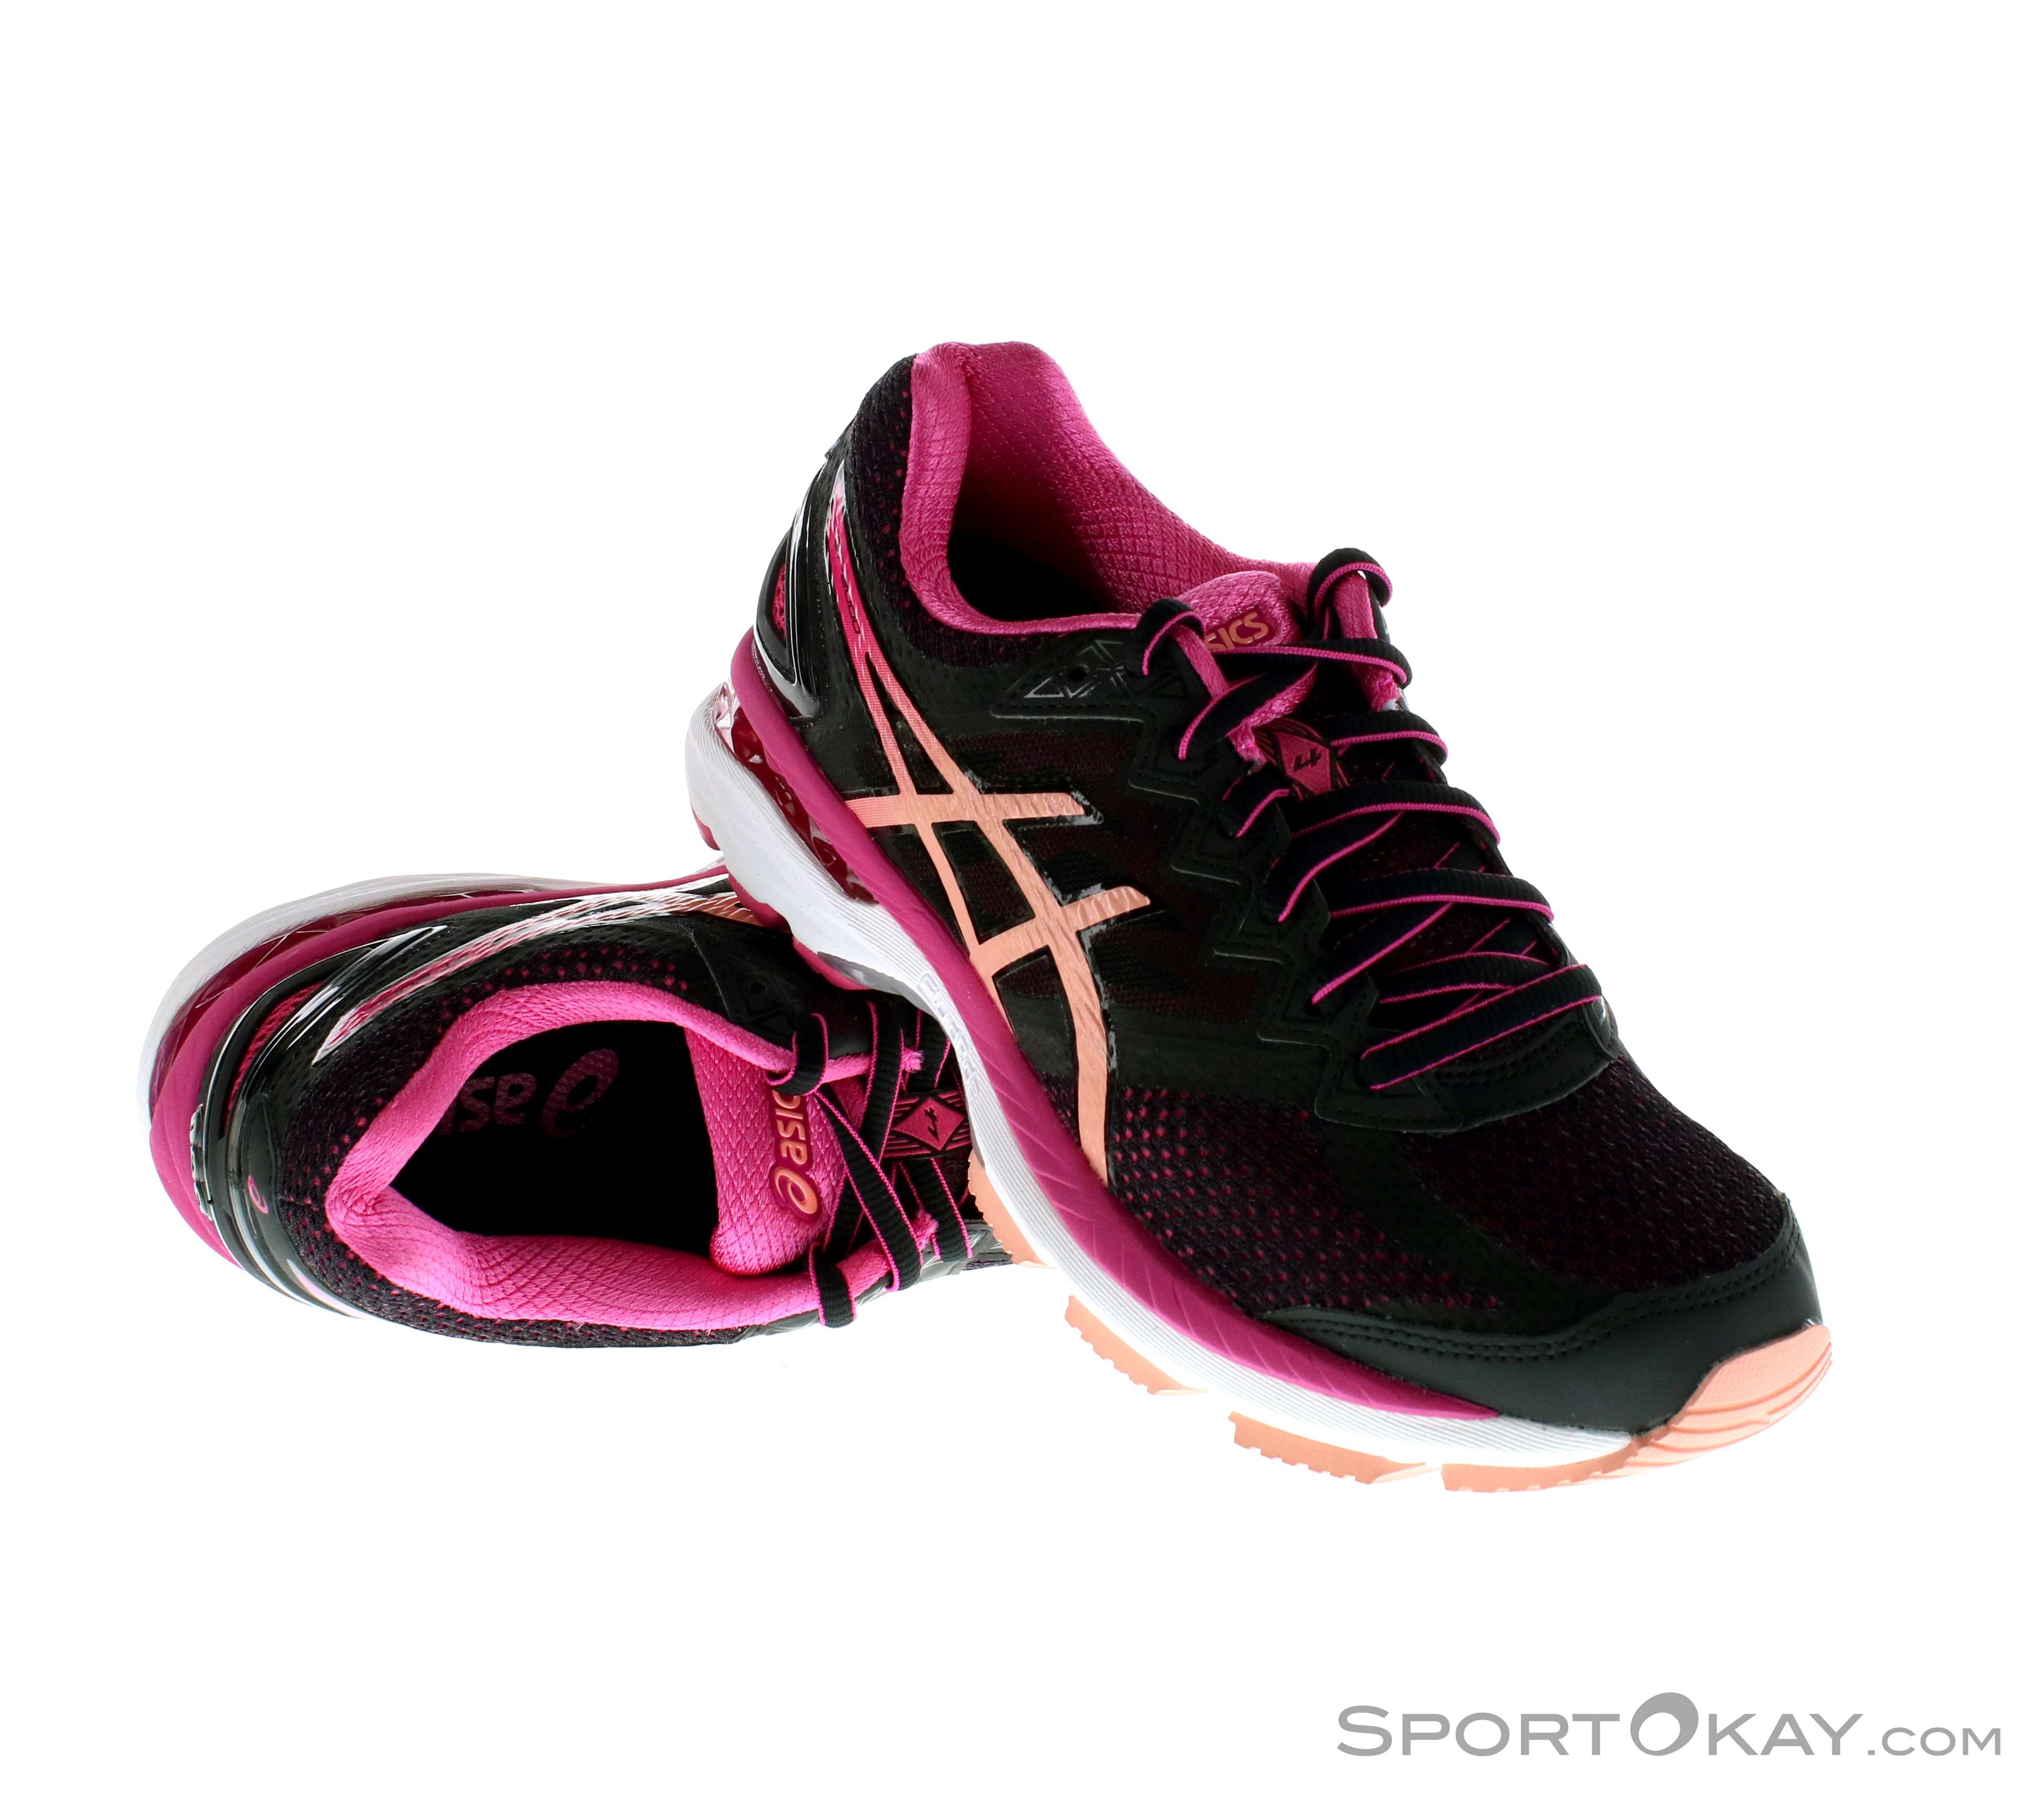 asics gt-2000 4 women's running shoes